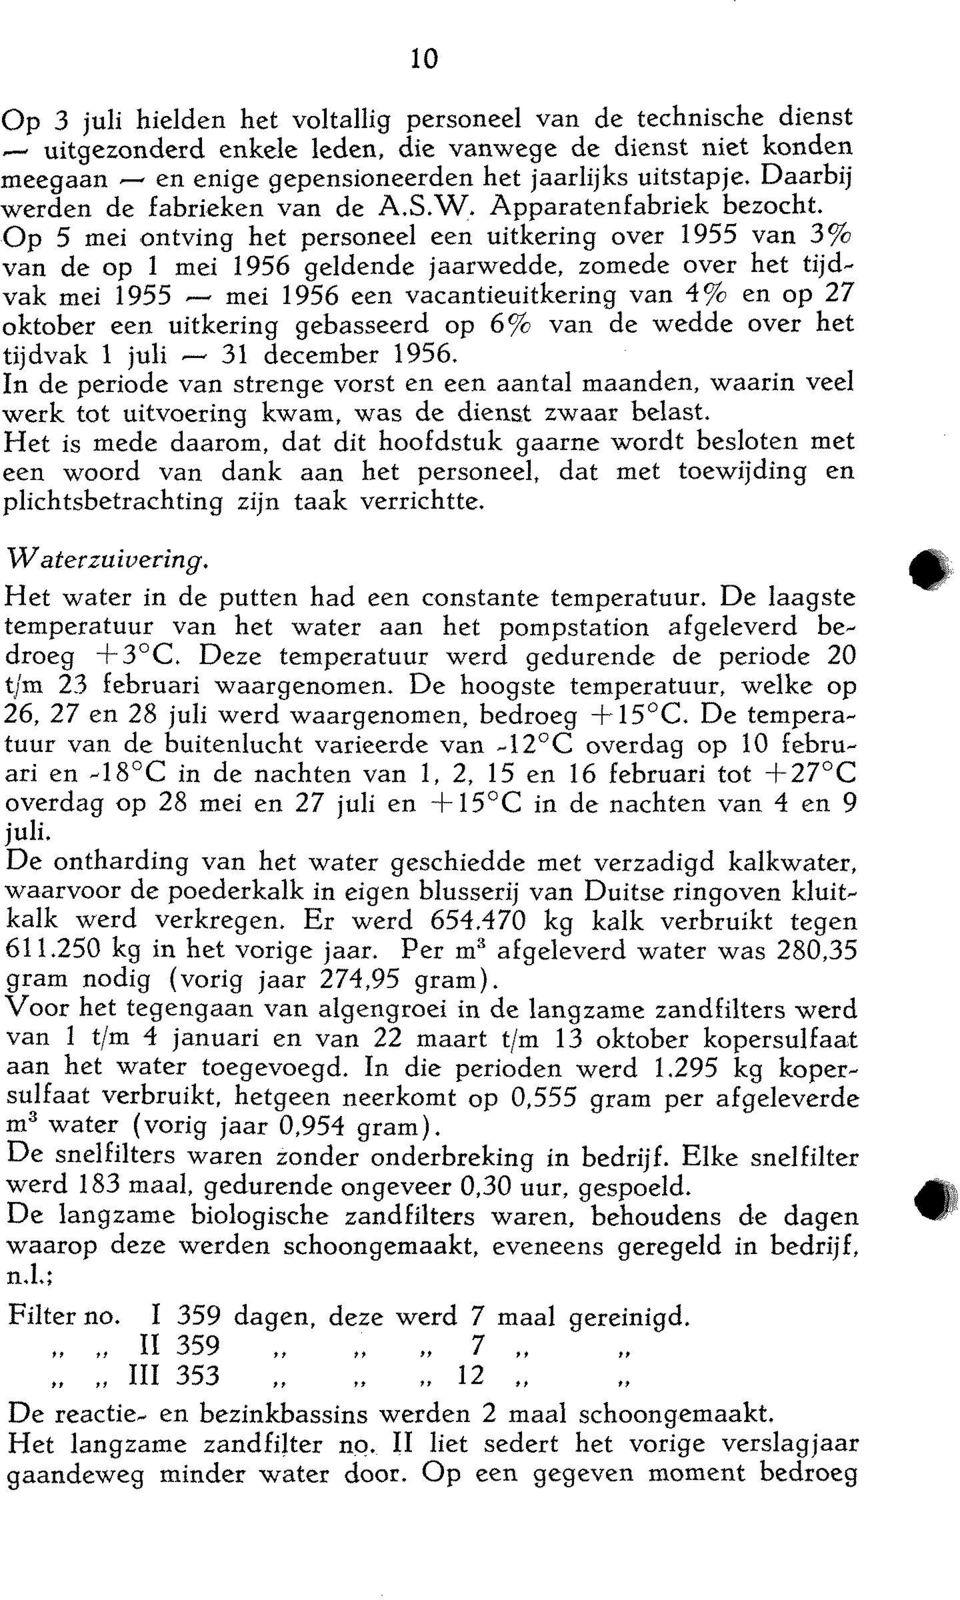 Op 5 mei ontving het personeel een uitkering over 1955 van 3% van de op 1 mei 1956 geldende jaarwedde, zomede over het tijdvak mei 1955 -- mei 1956 een vacantieuitkering van 4% en op 27 oktober een